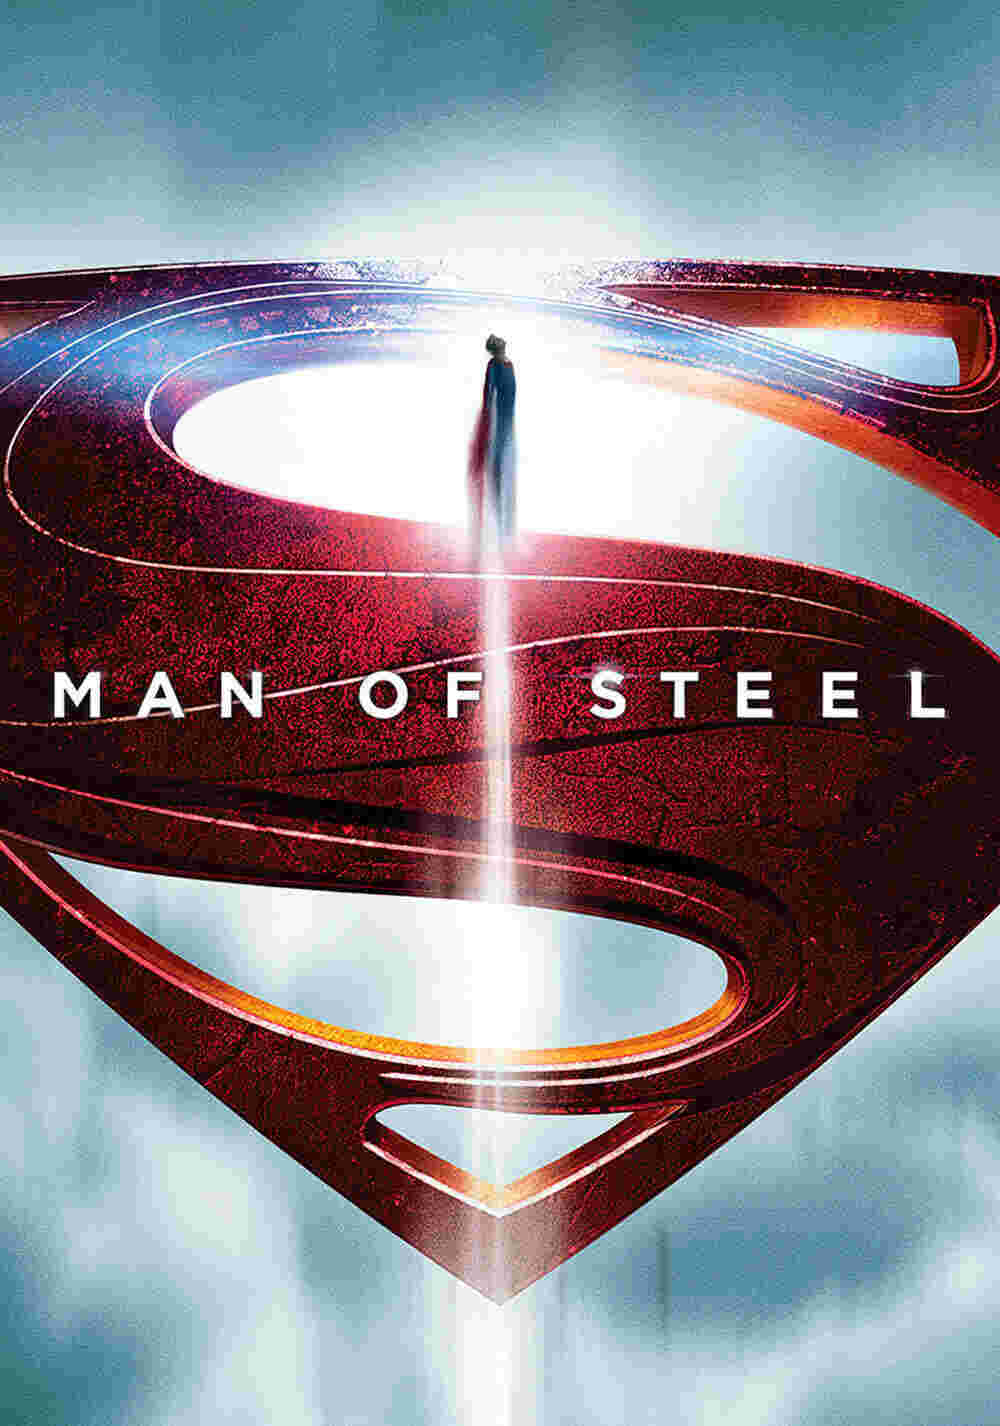 Man of Steel (2013) Henry Cavill